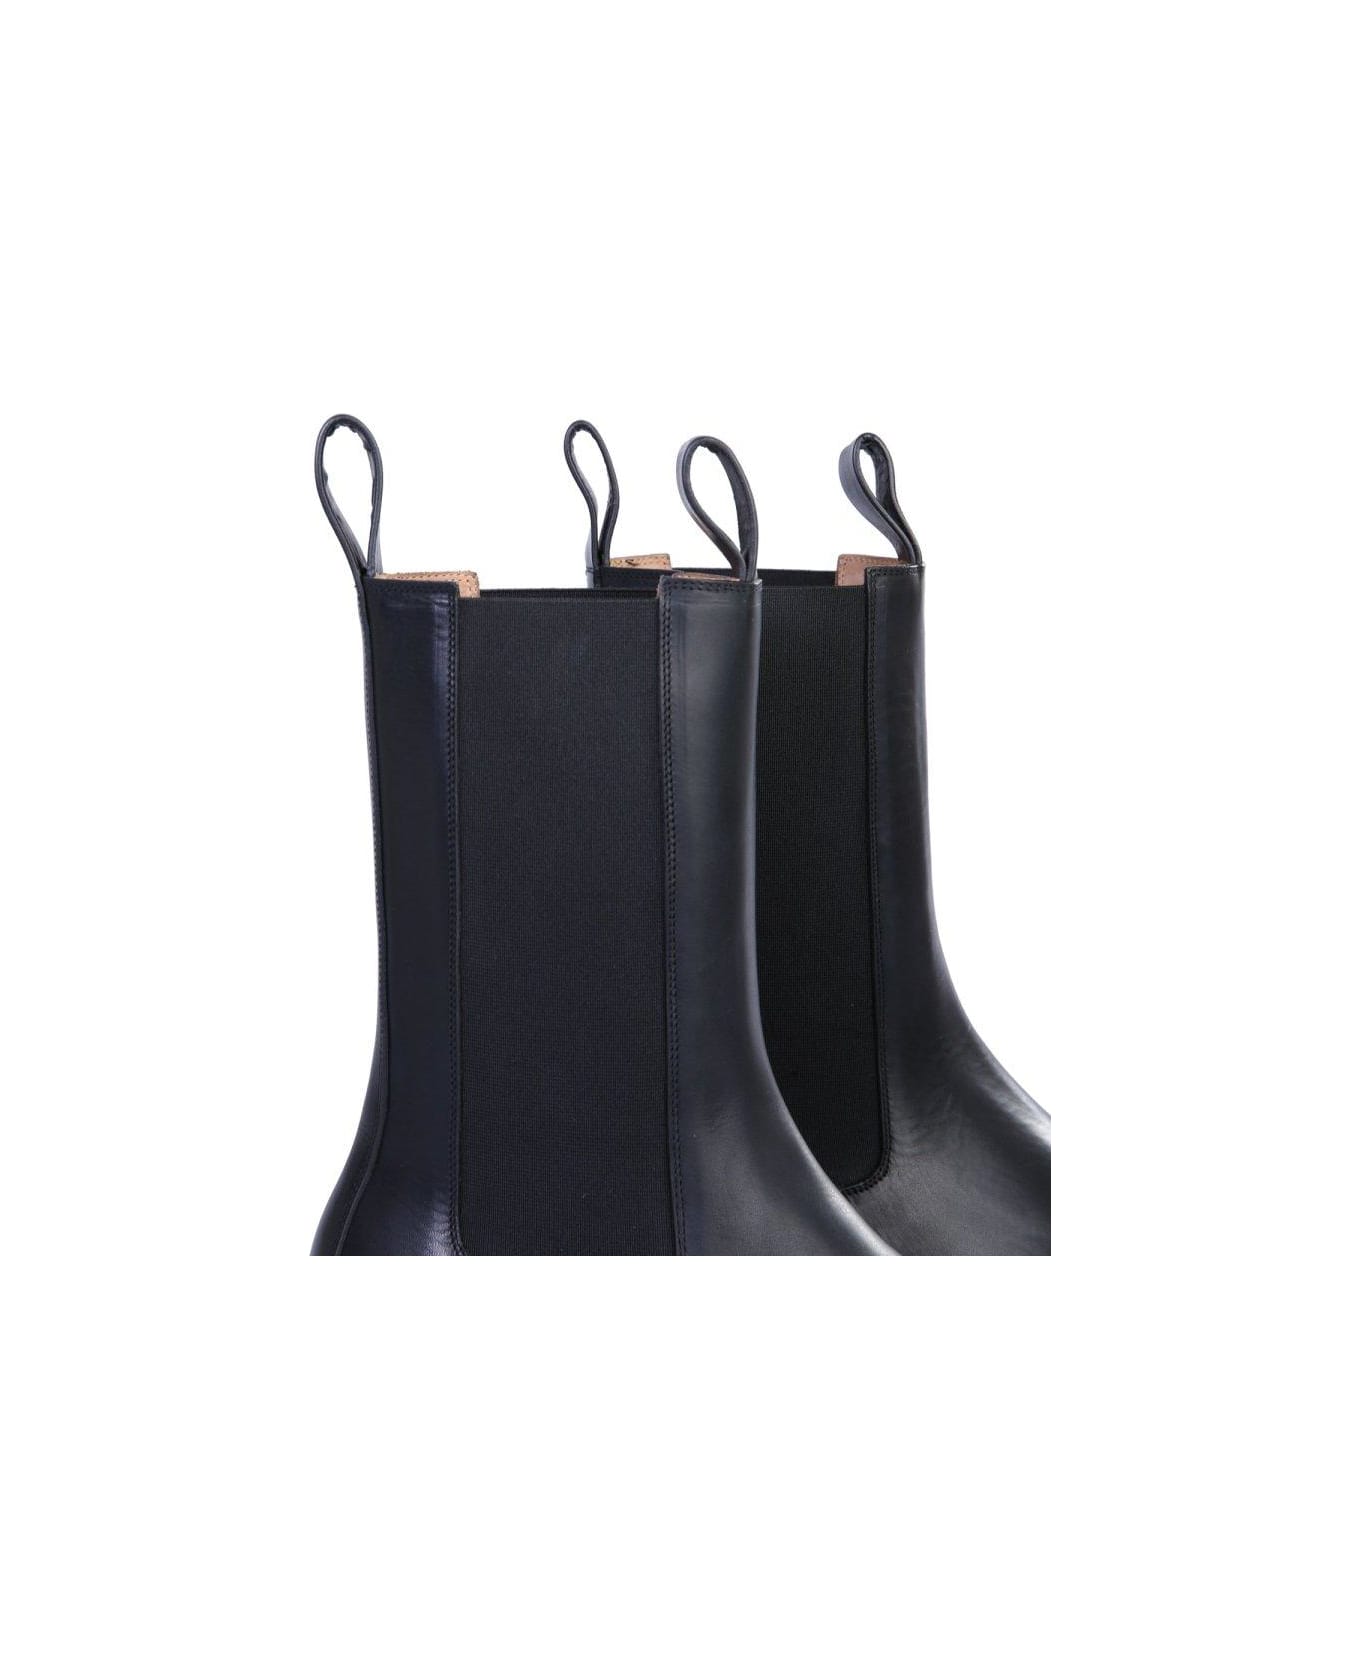 Bottega Veneta Bv Lug Boots - Black ブーツ